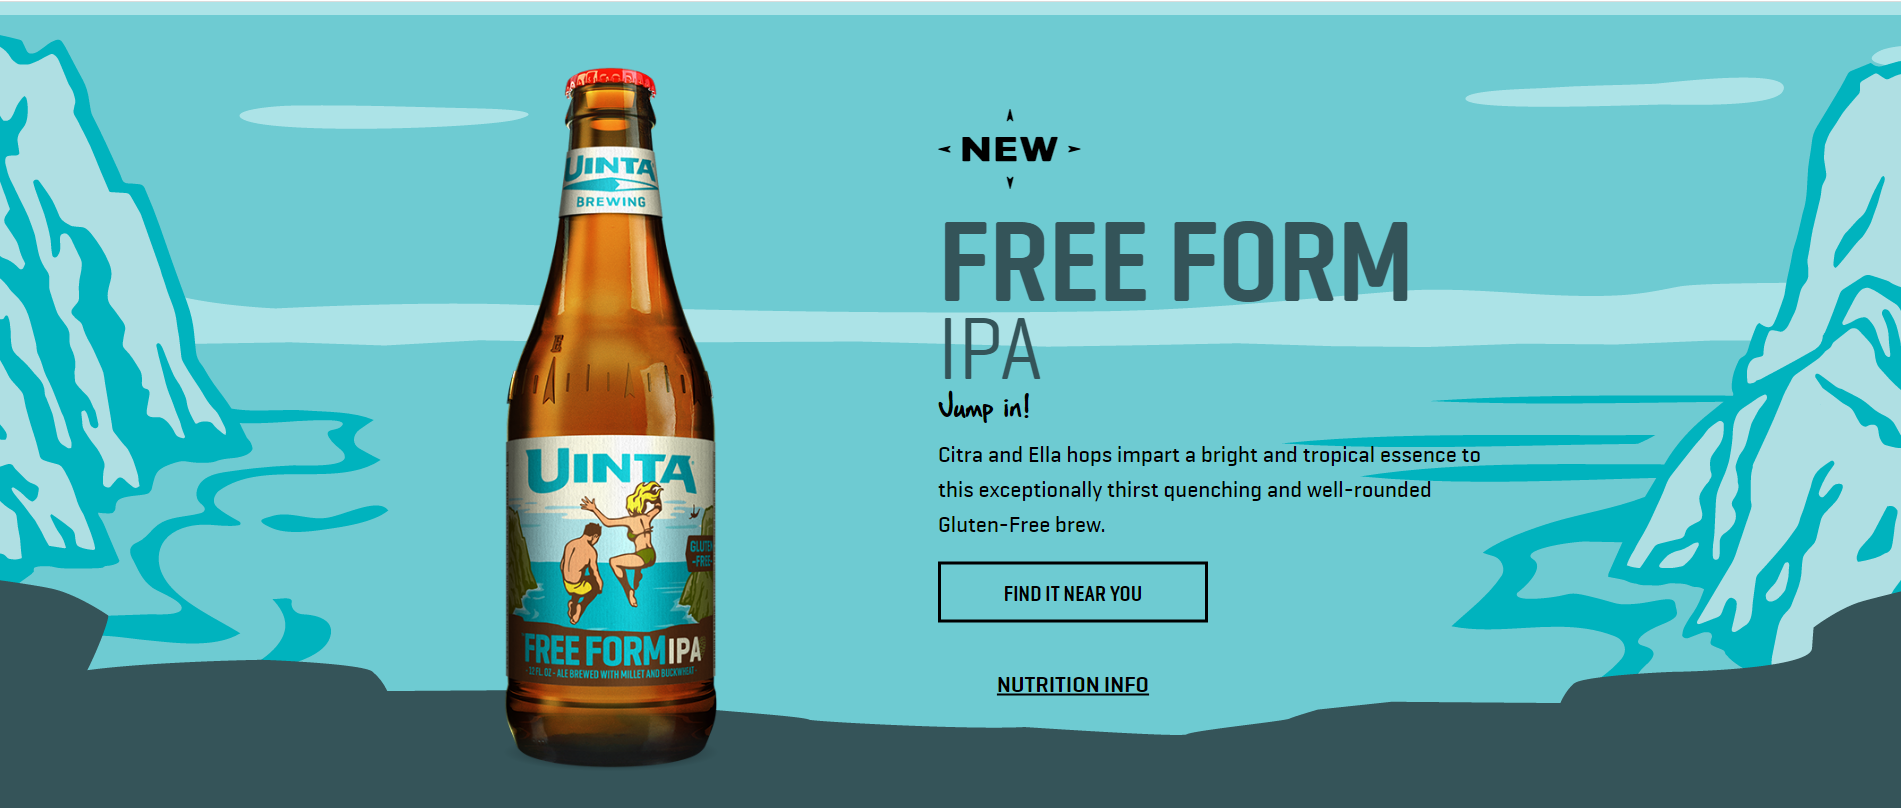 Uinta的免费IPA标签就像它的啤酒味道一样简单。